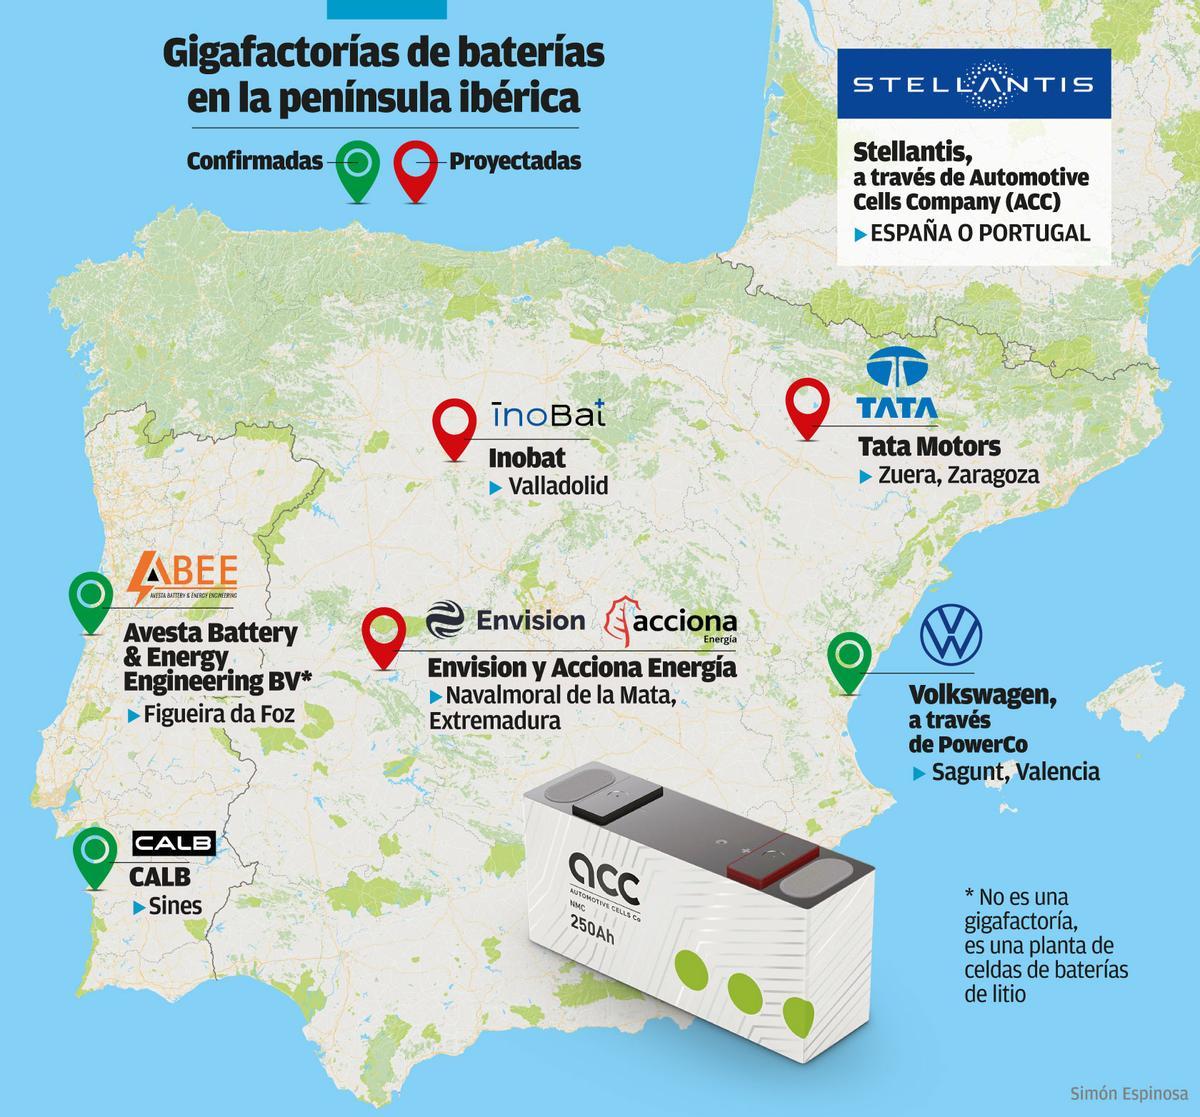 Gigafactorías de baterías en la Península Ibérica.